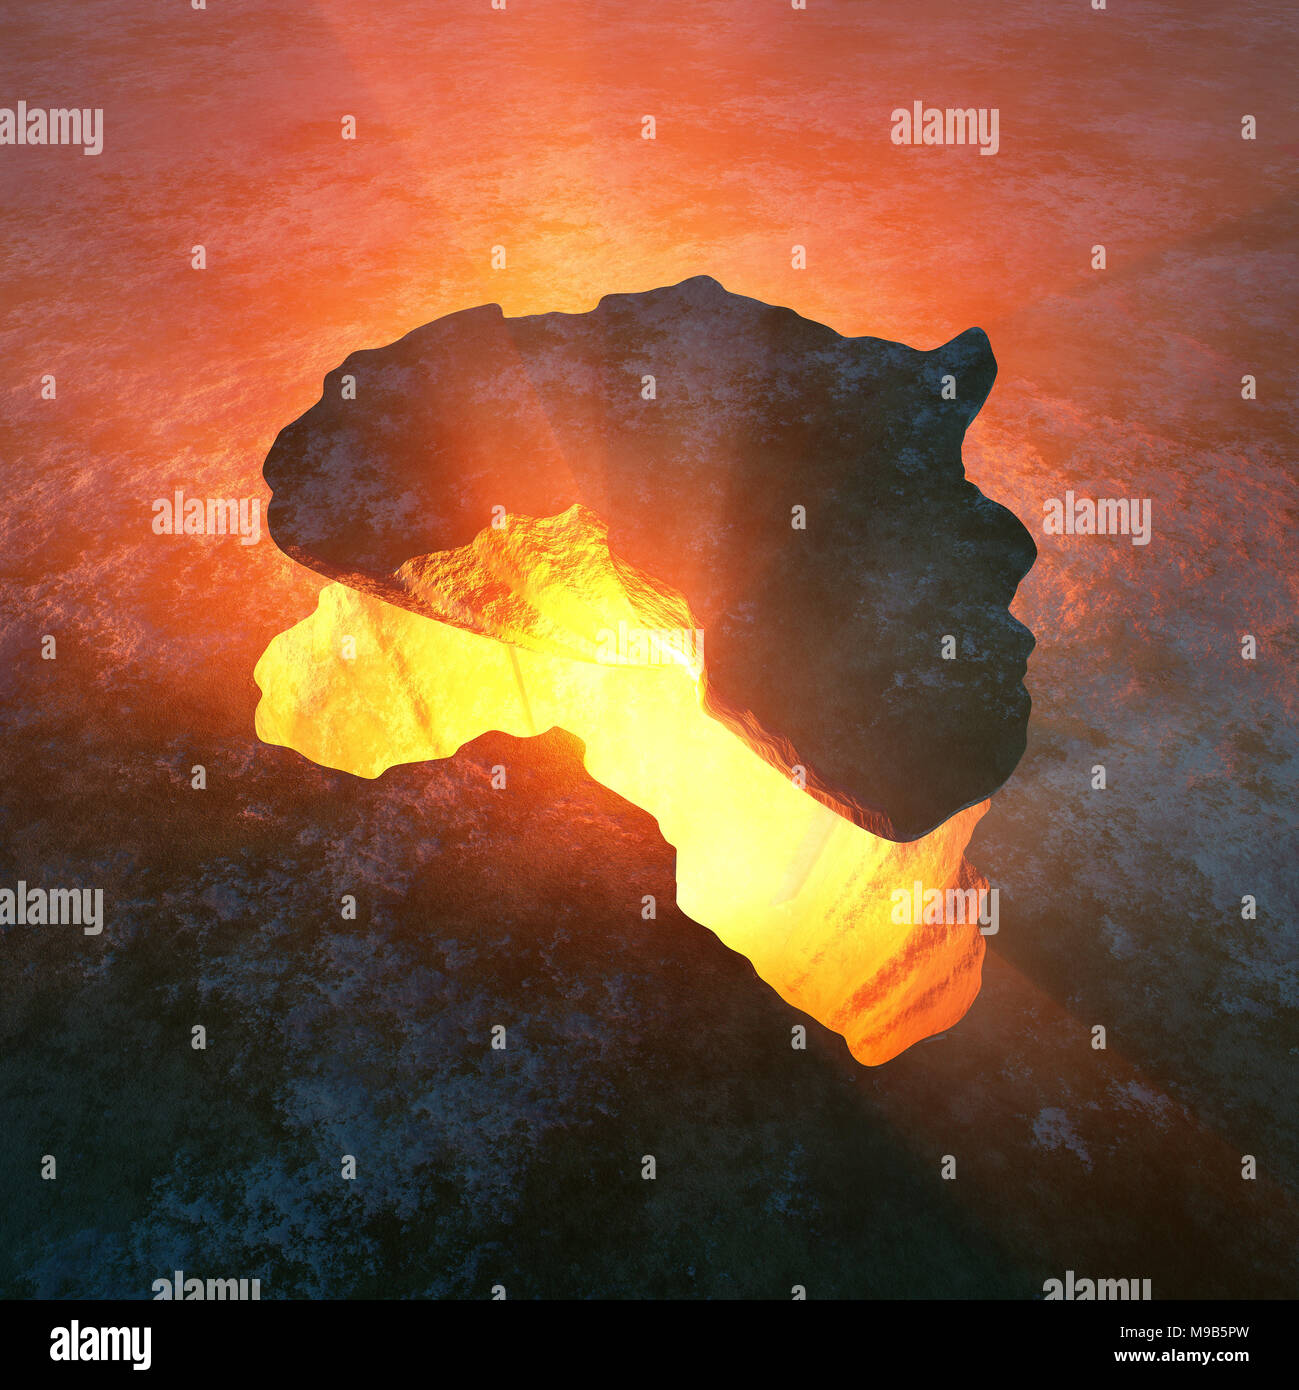 Continent africain dans la roche solide extrait à partir d'un trou chaud rouge dans la terre. Rendu 3D d'art conceptuel Banque D'Images